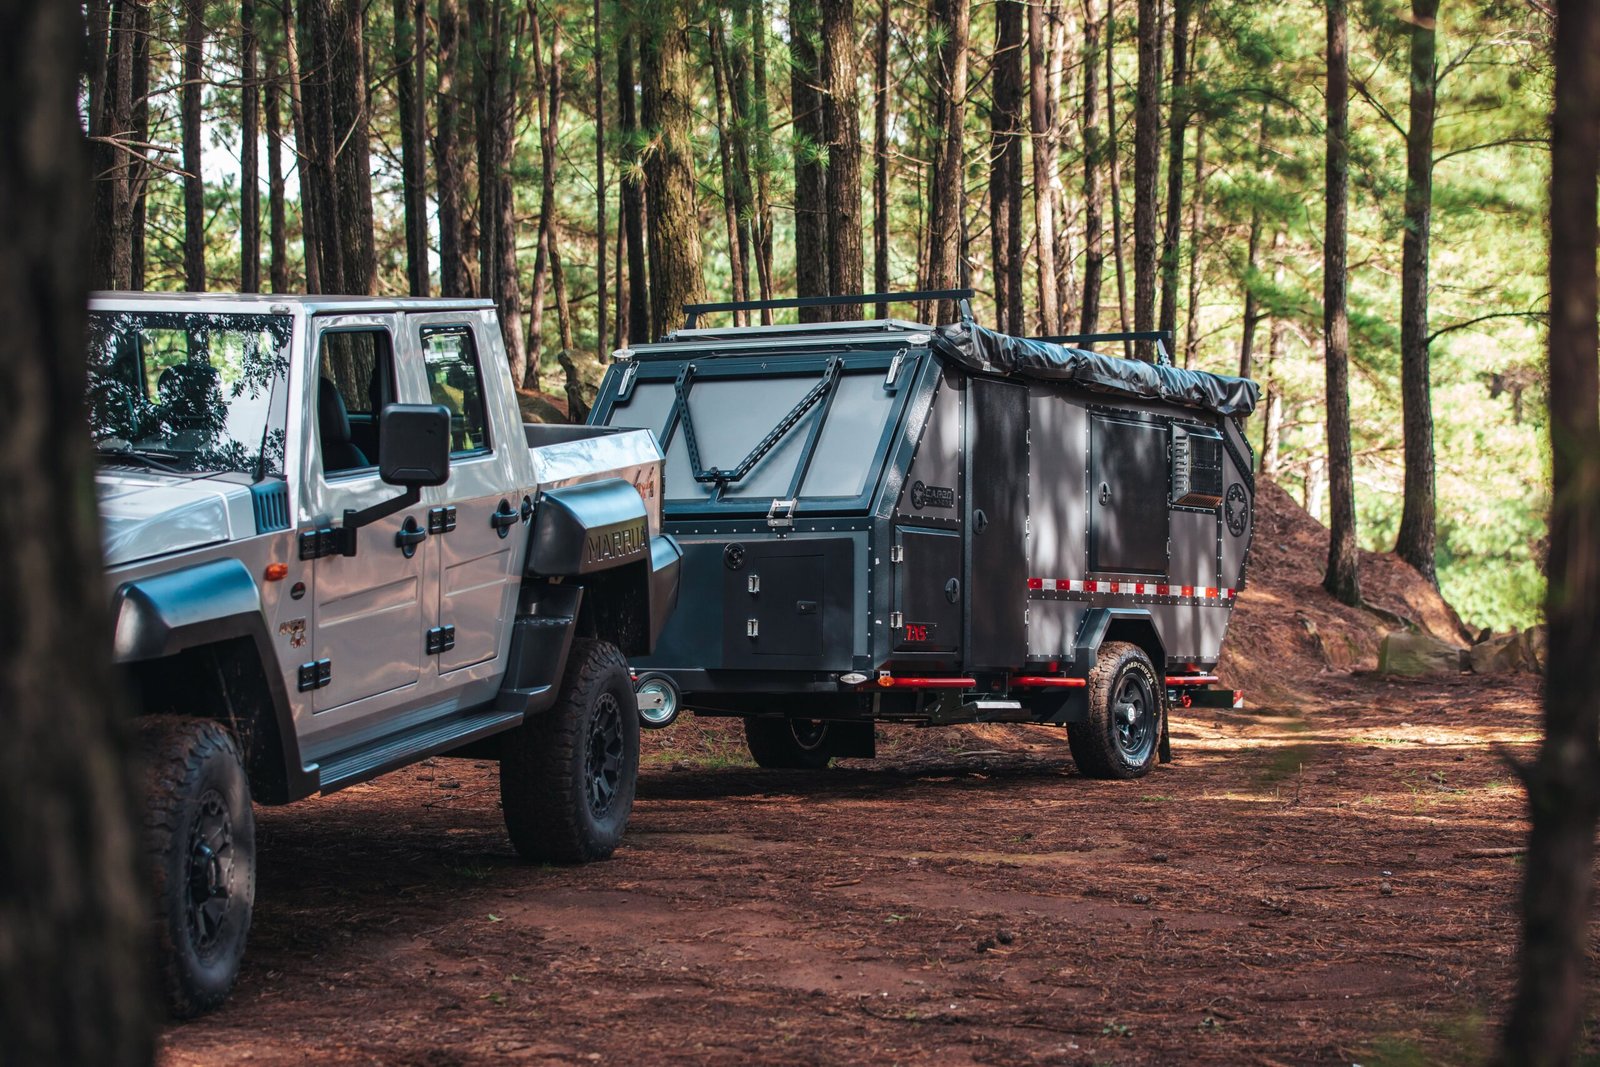 comprar um trailer para viajar - carbo campers